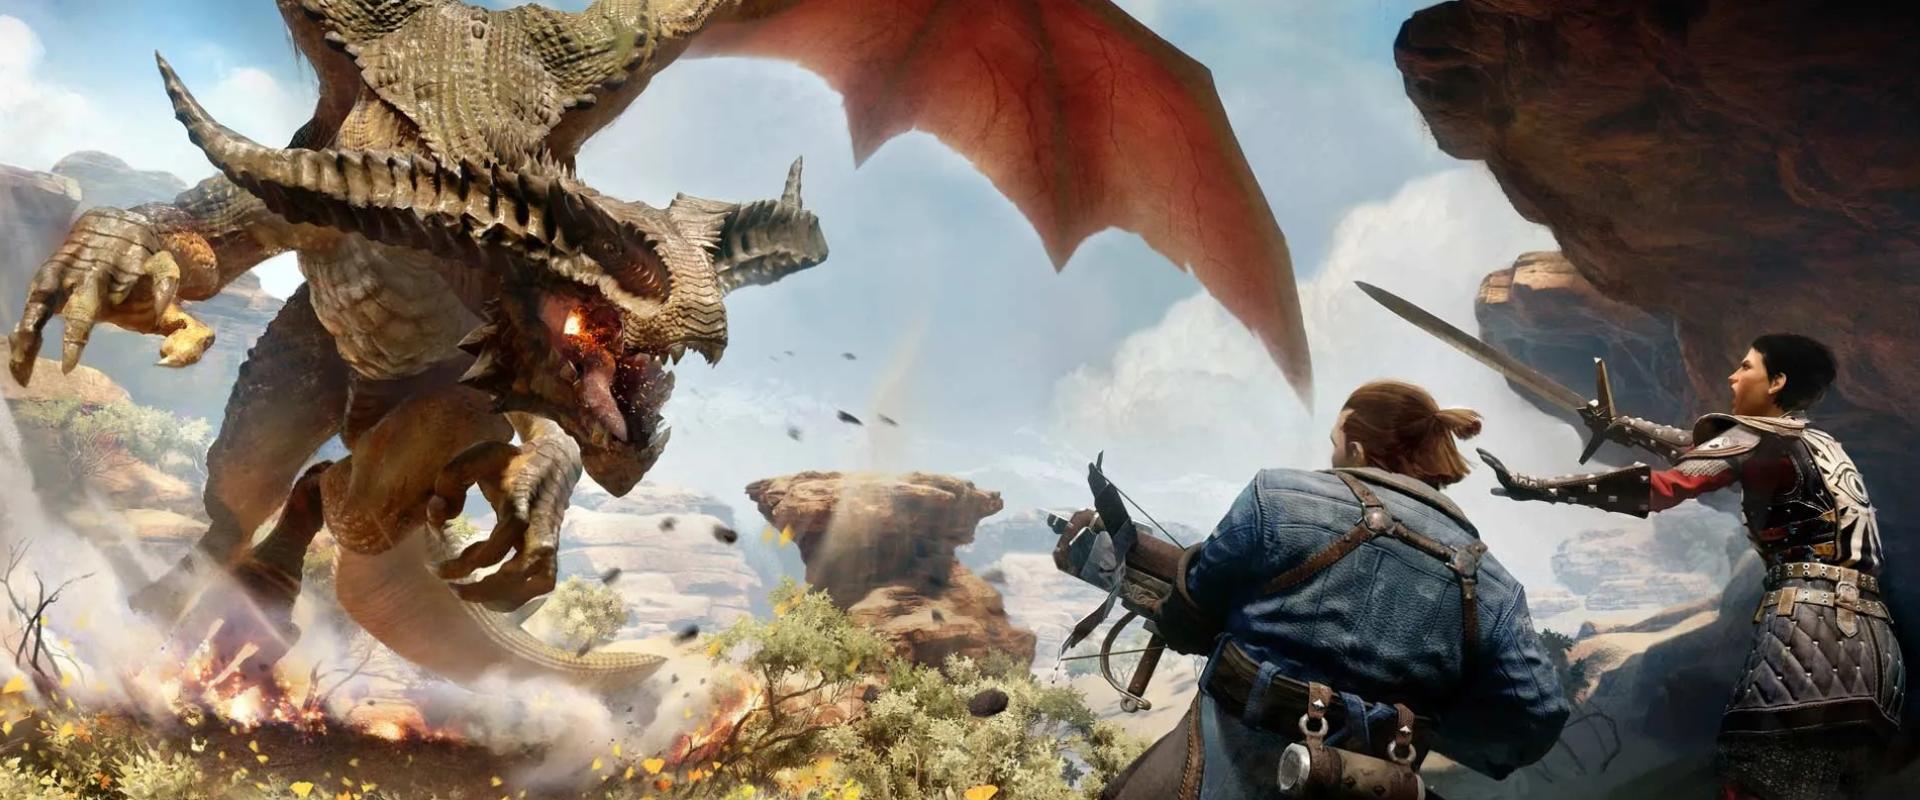 Jó hírt kaptak a Dragon Age-fanok, nem kell már sokat várni az új játékra